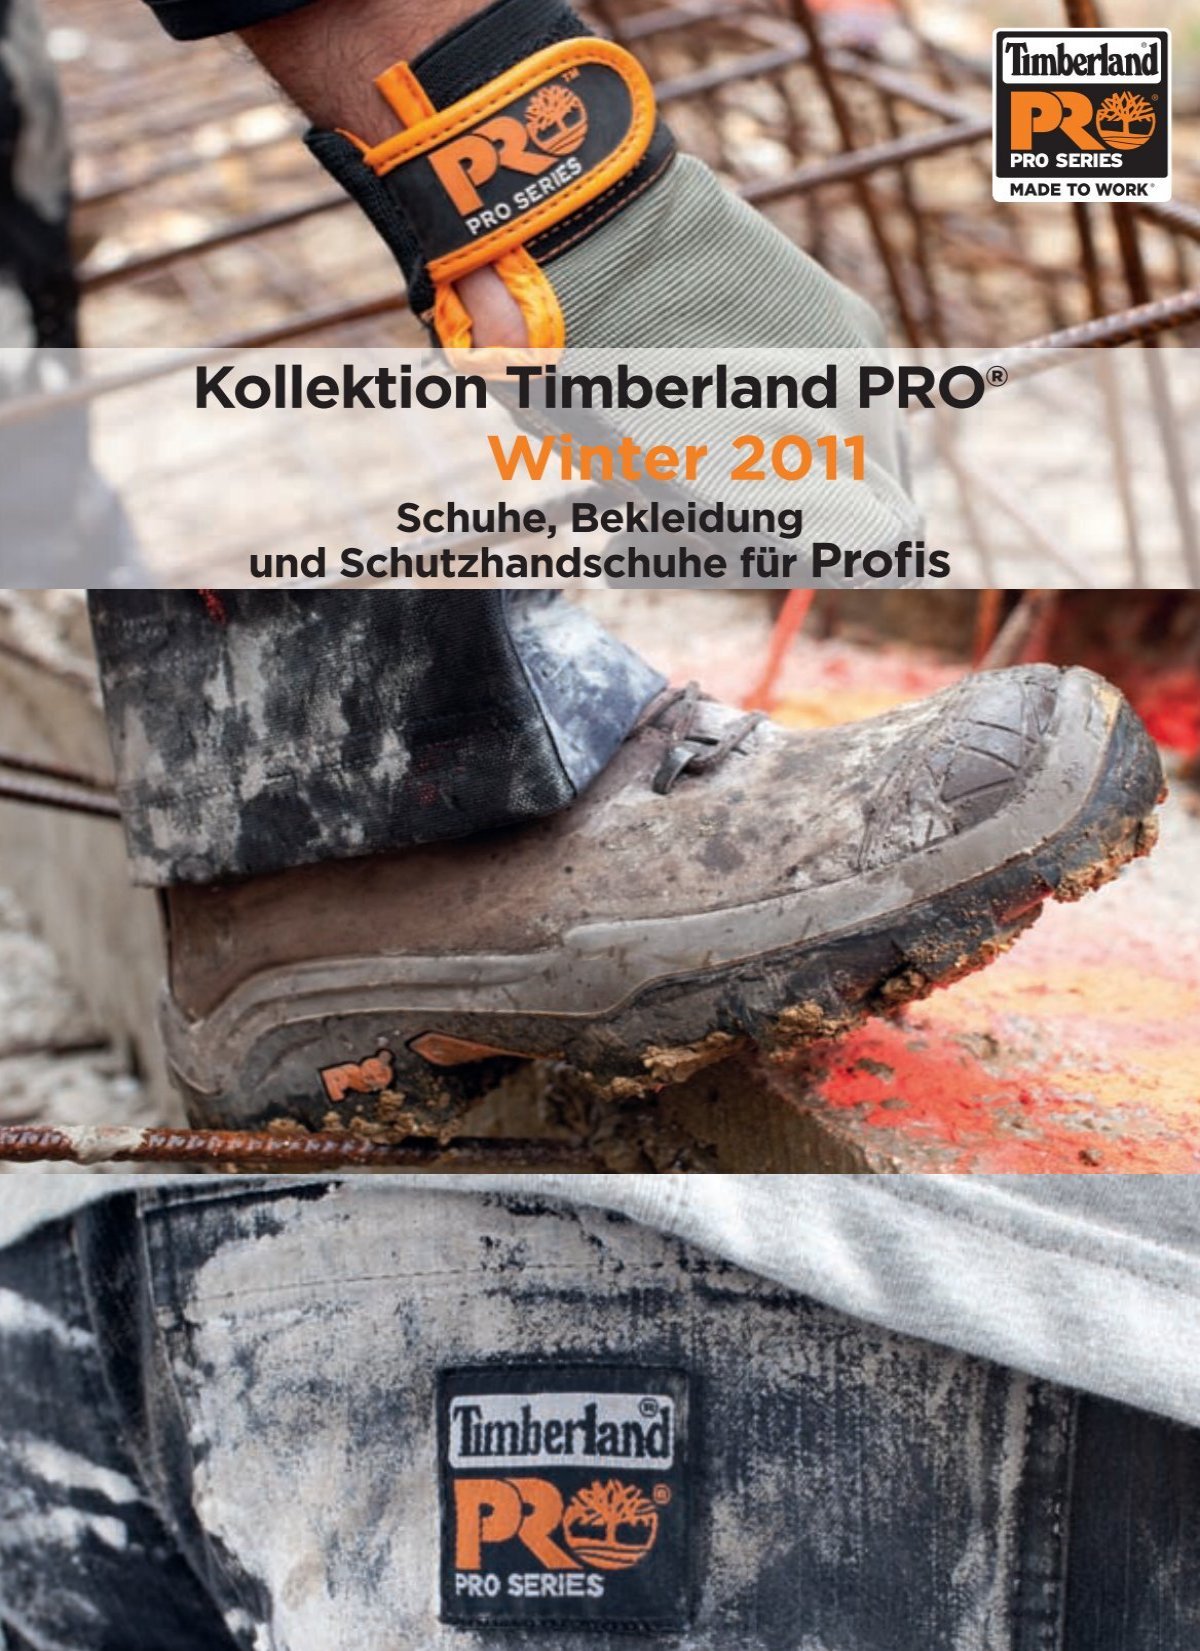 Kollektion Timberland PRO® City-Tools Winter 2011 ... GmbH 